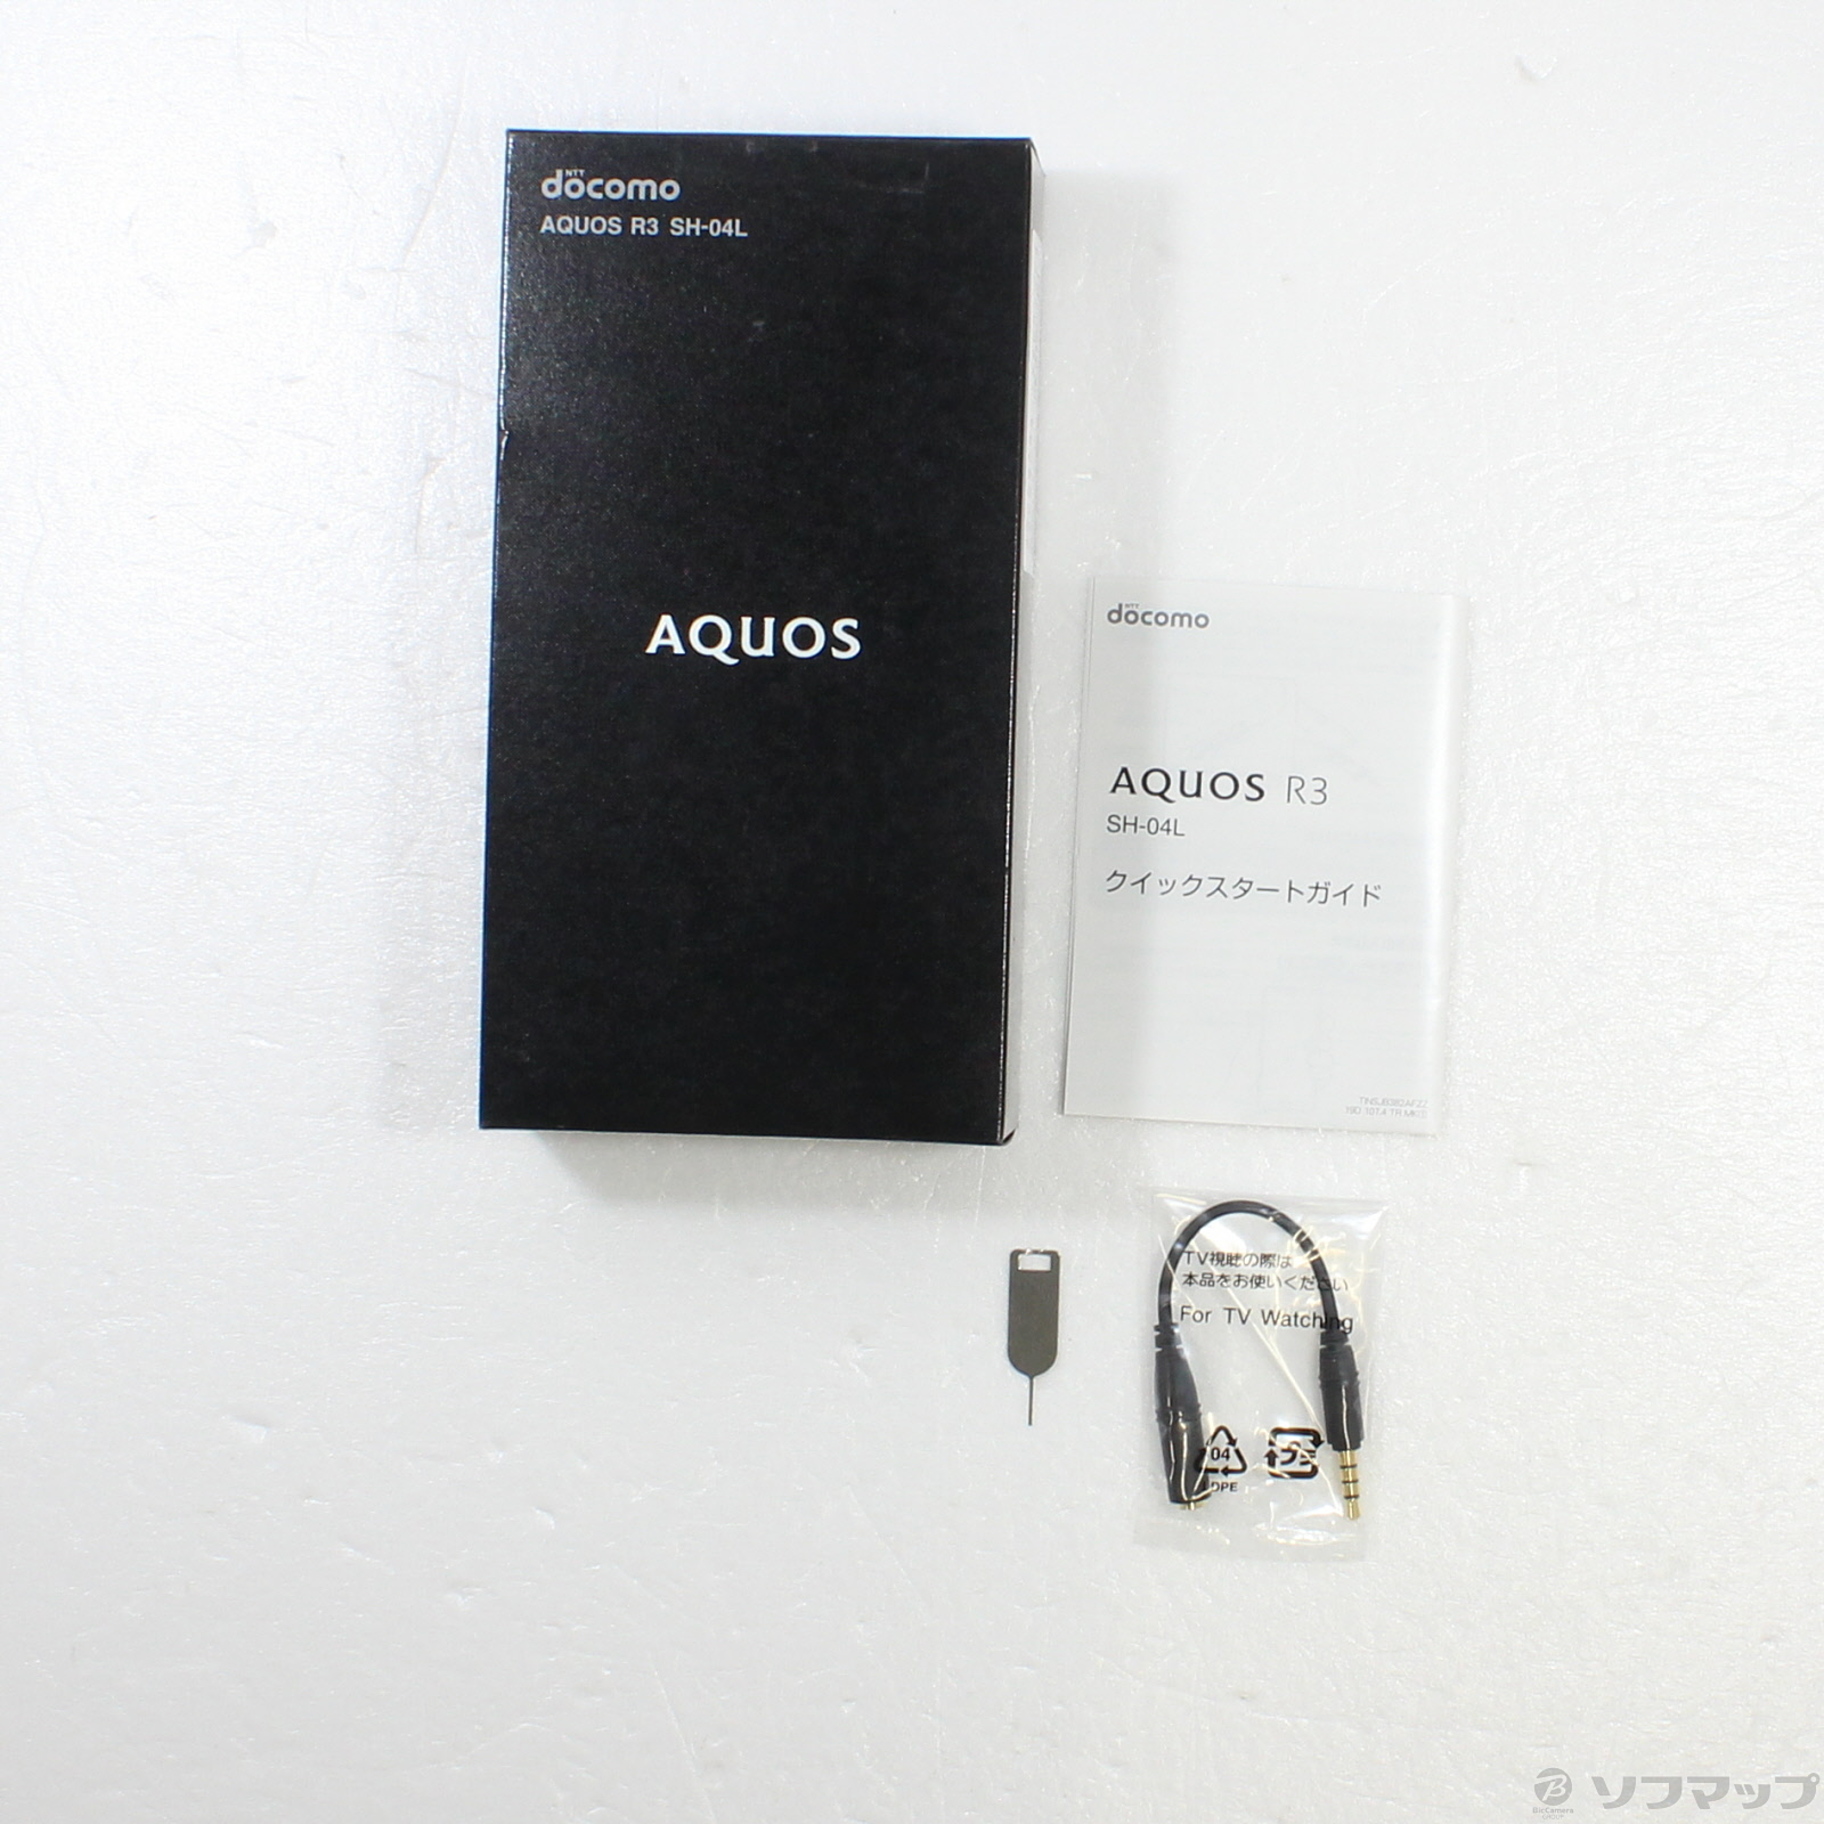 AQUOS R3 SIMフリー化済み Premium Black 2台セット